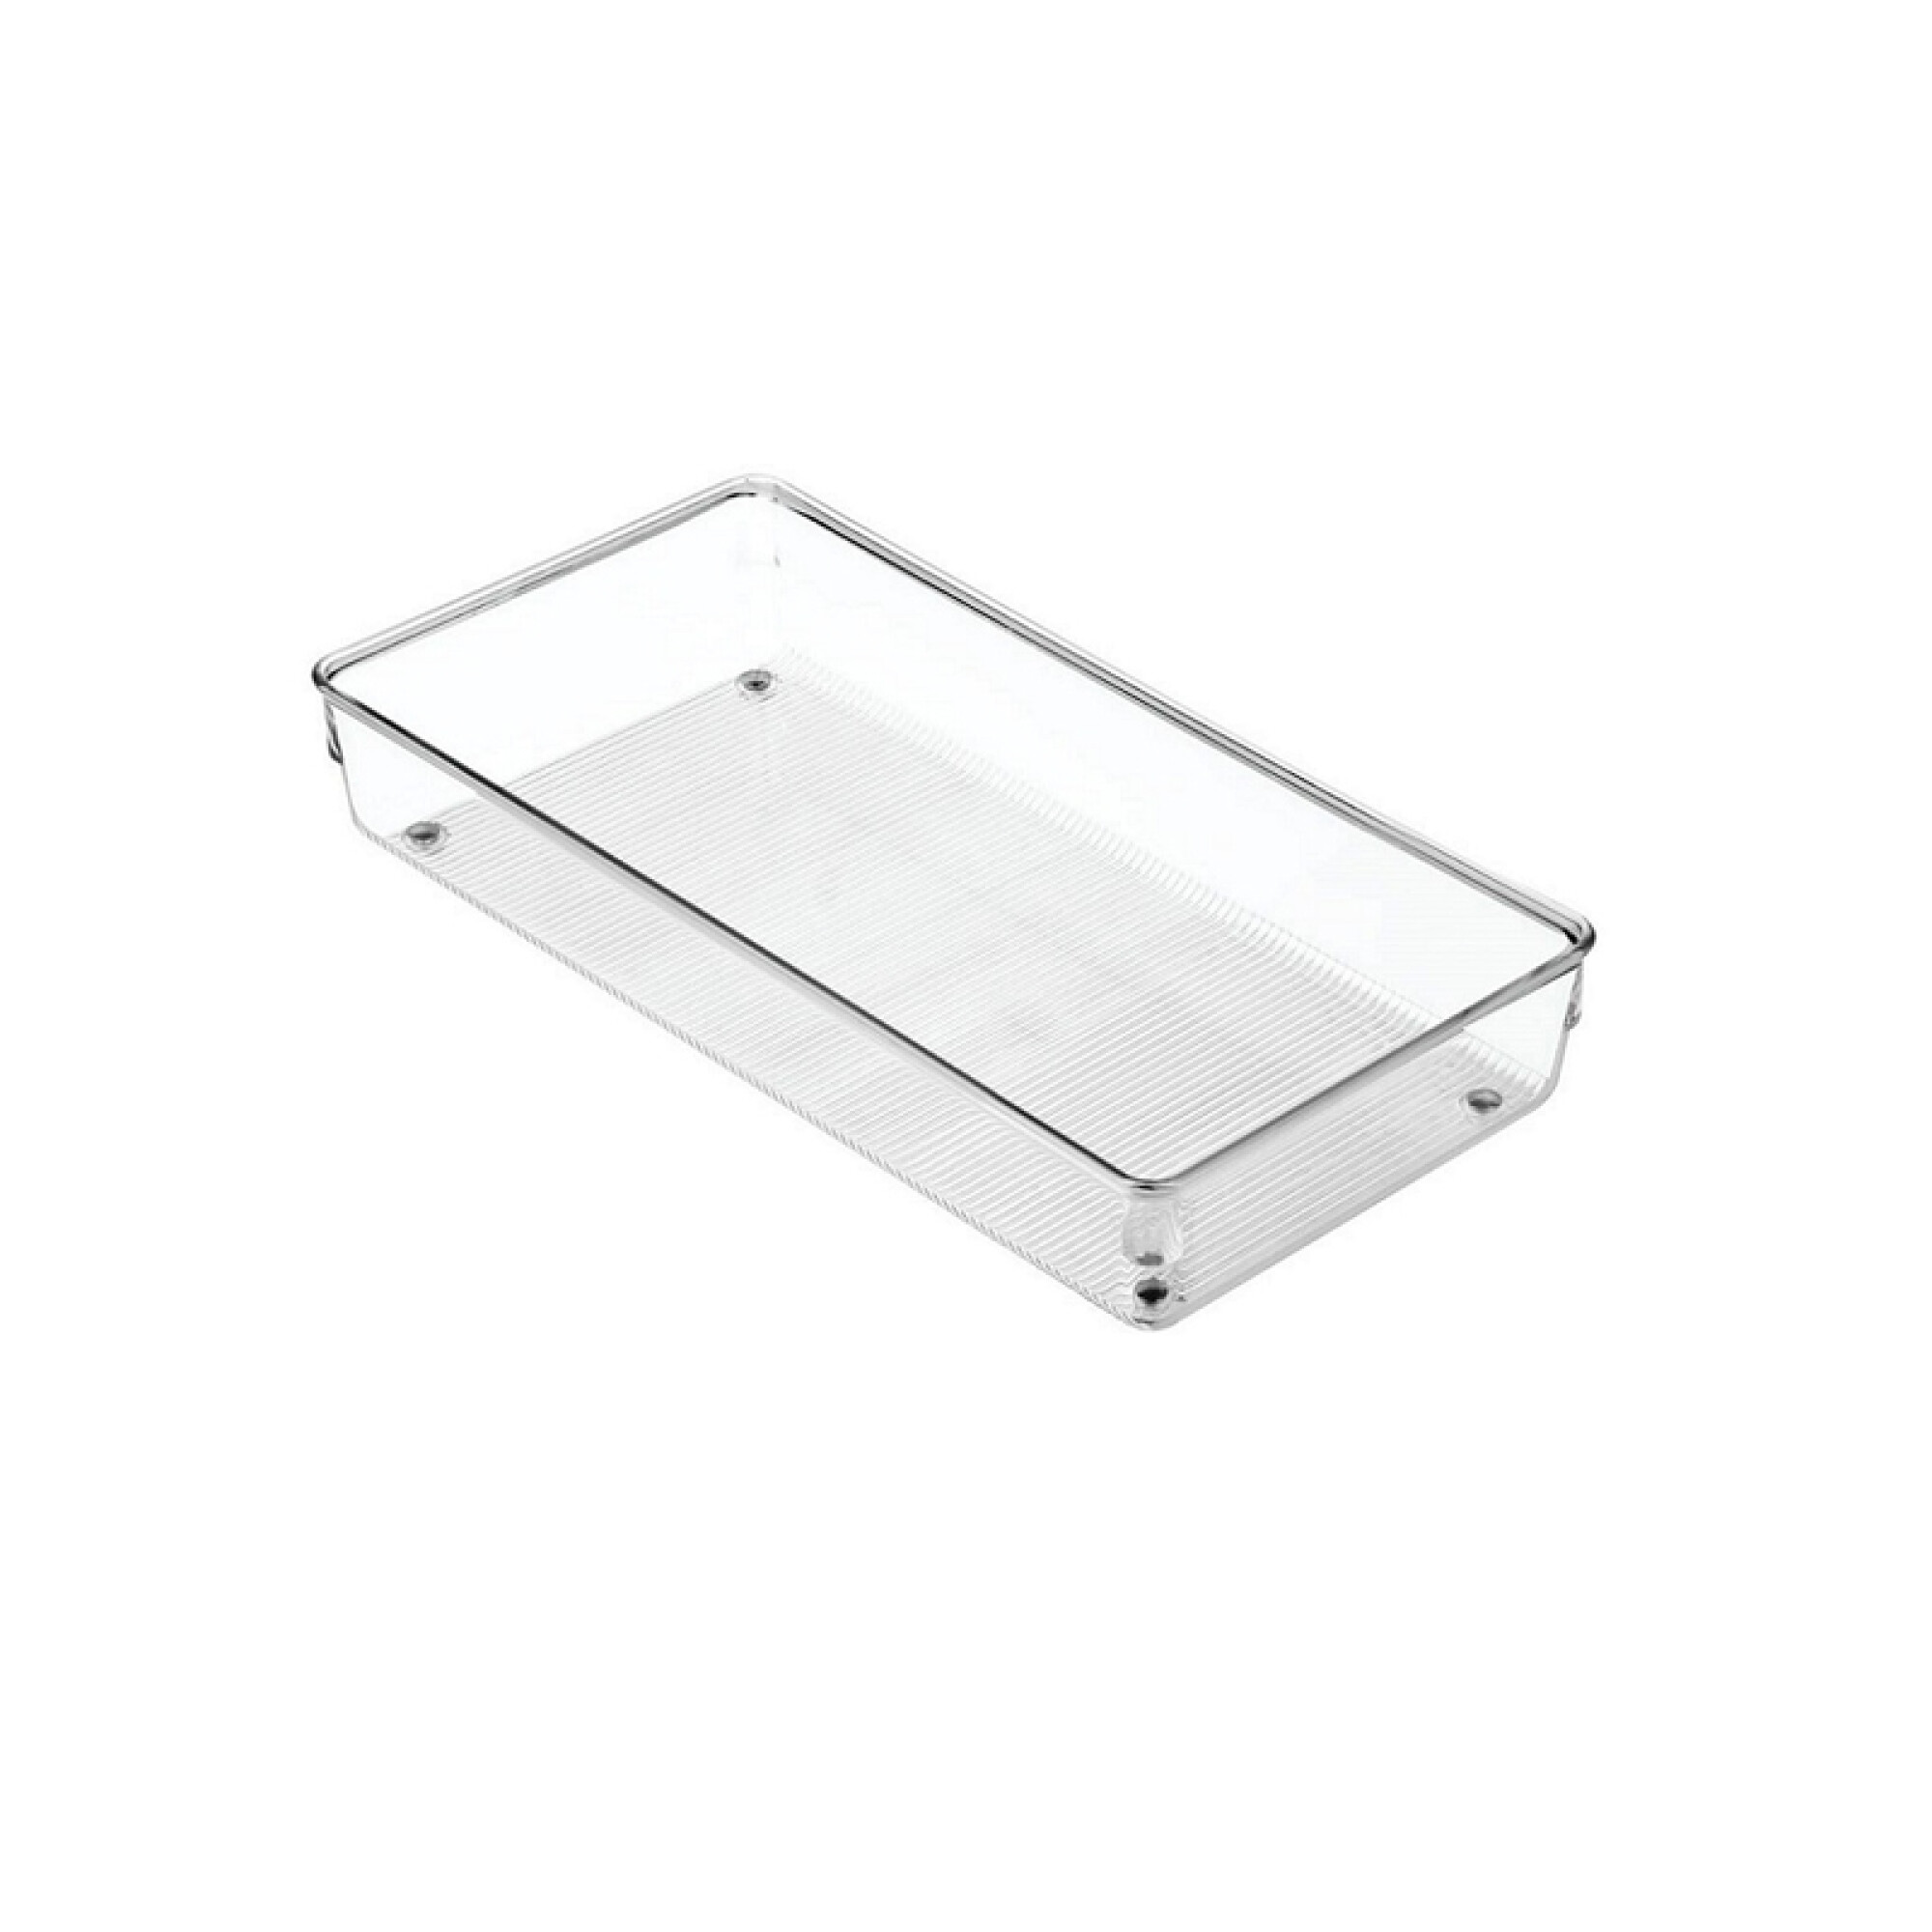 Organizador transparente p/ cajones 15 x 30 x 5cm - TV1226 — Fivisa